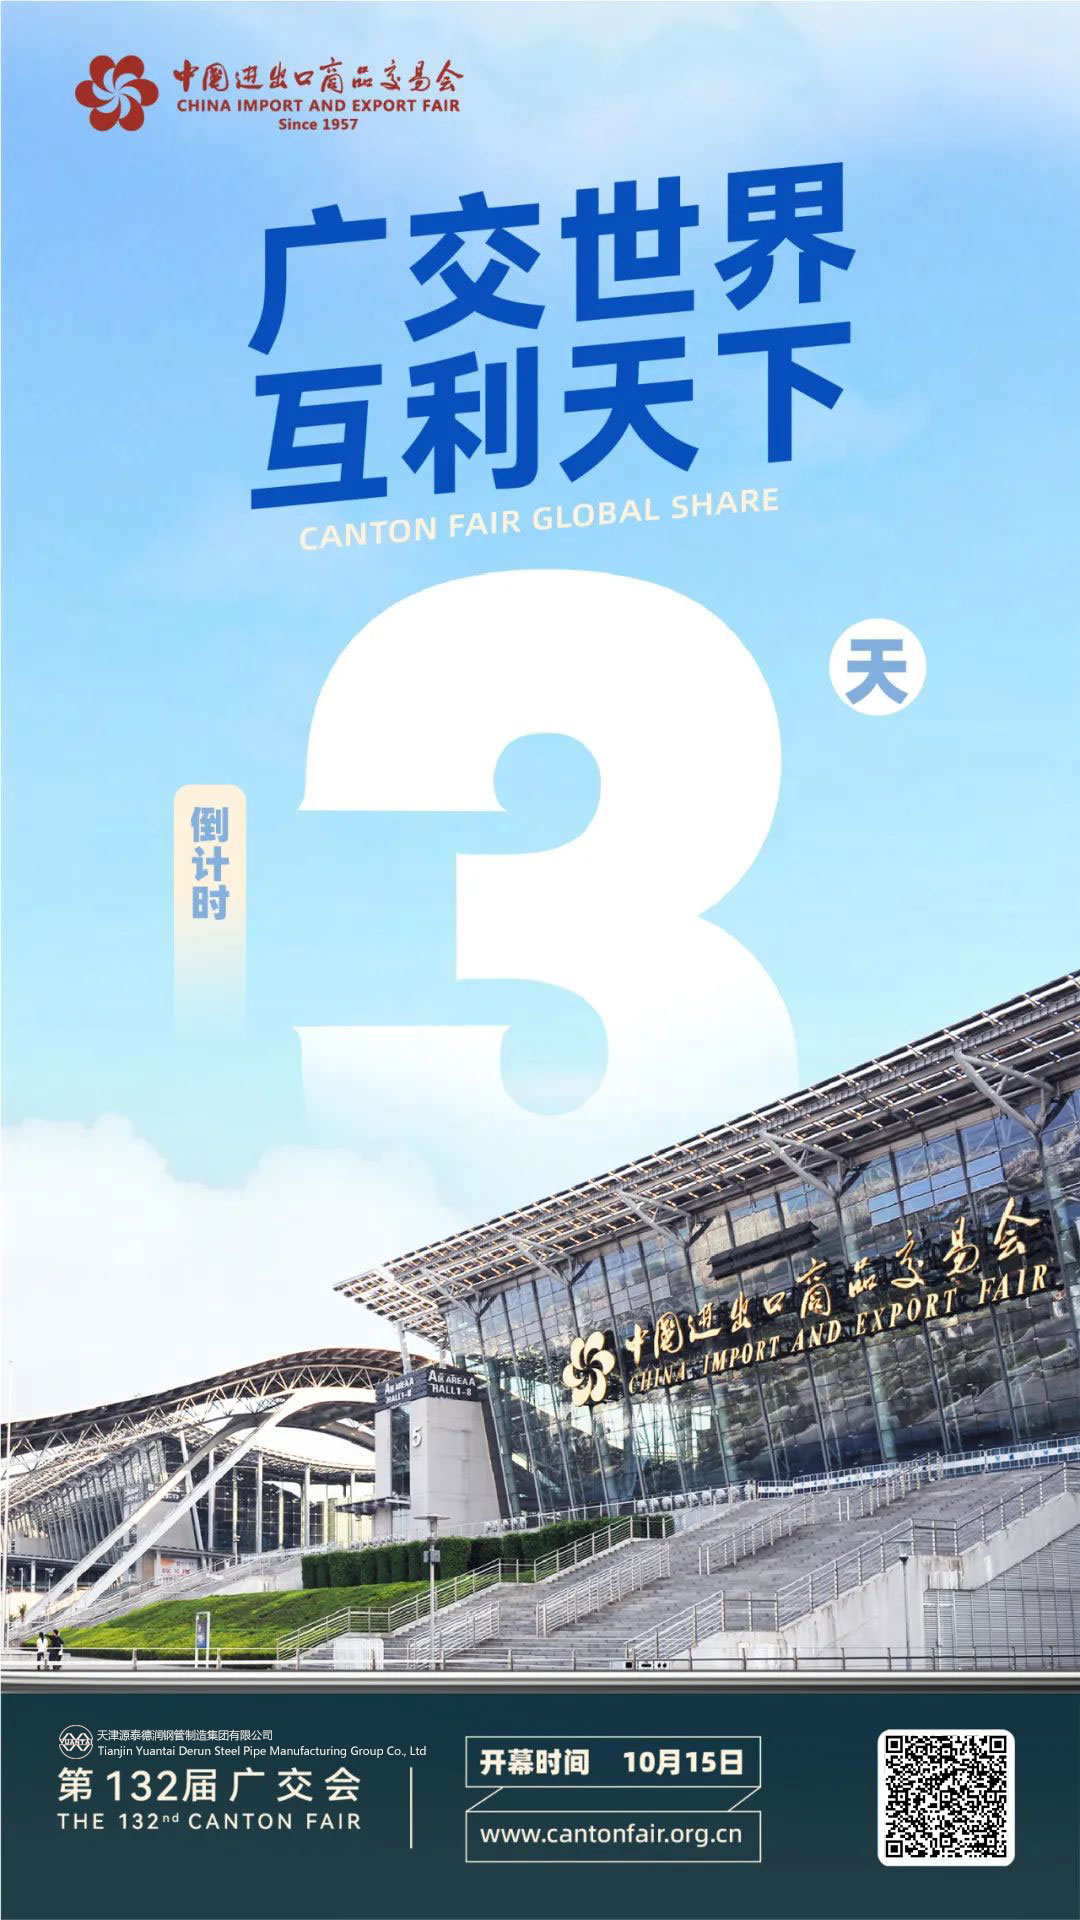 งานกวางเจาแฟร์ครั้งที่ 132 นับถอยหลัง 3 วัน – Tianjin Yuantaiderun Steel Pipe Manufacturing Group Co., Ltd